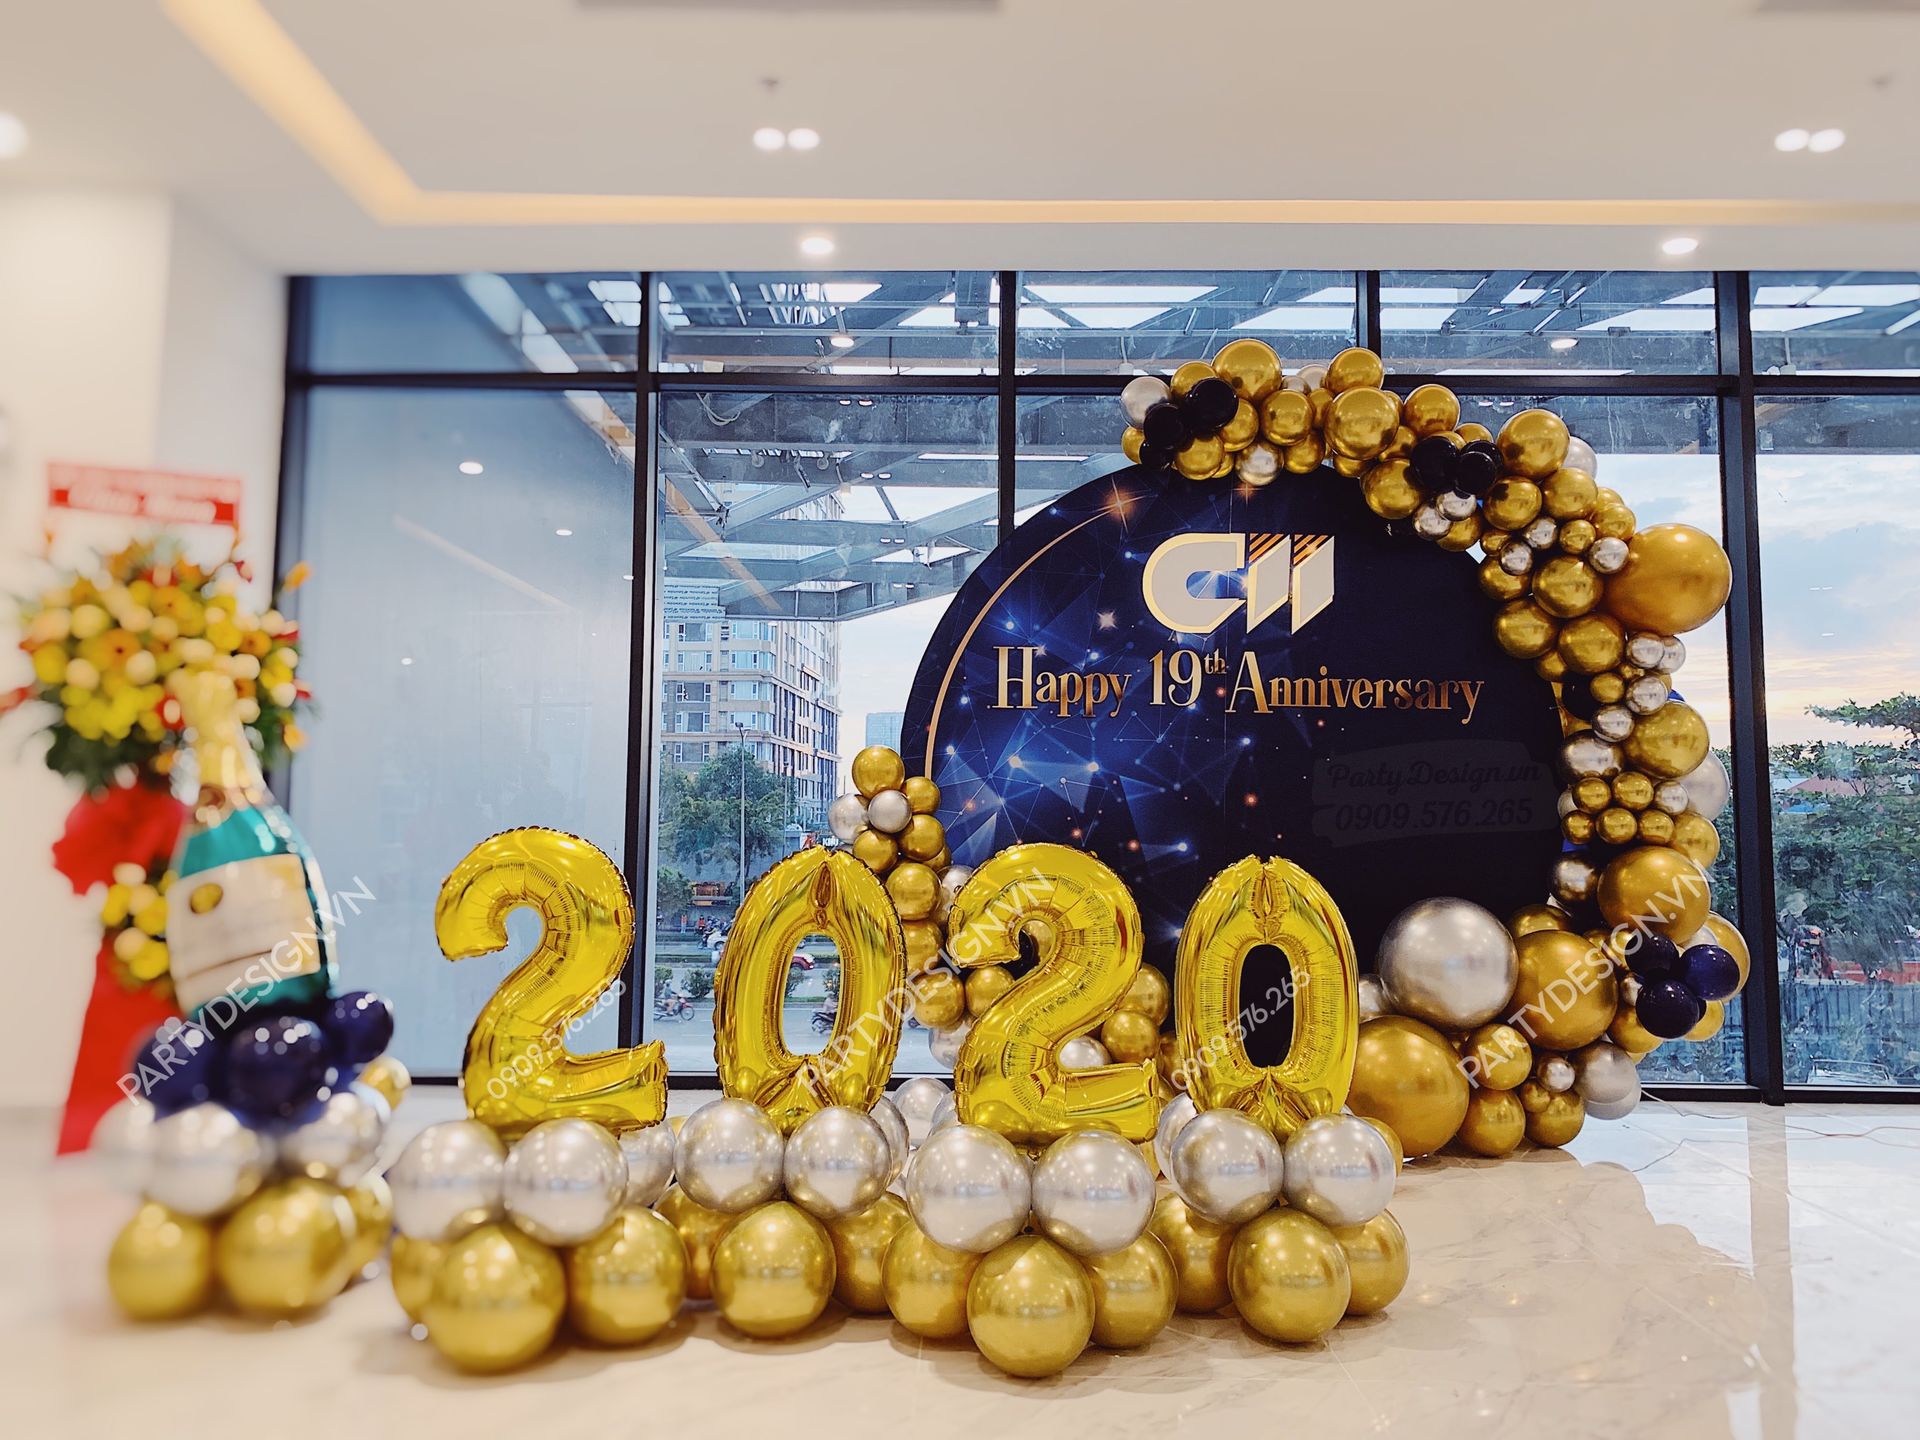 Backdrop trang trí tiệc Year End Party, tất niên công ty CII, viền bong bóng vàng gold và xanh